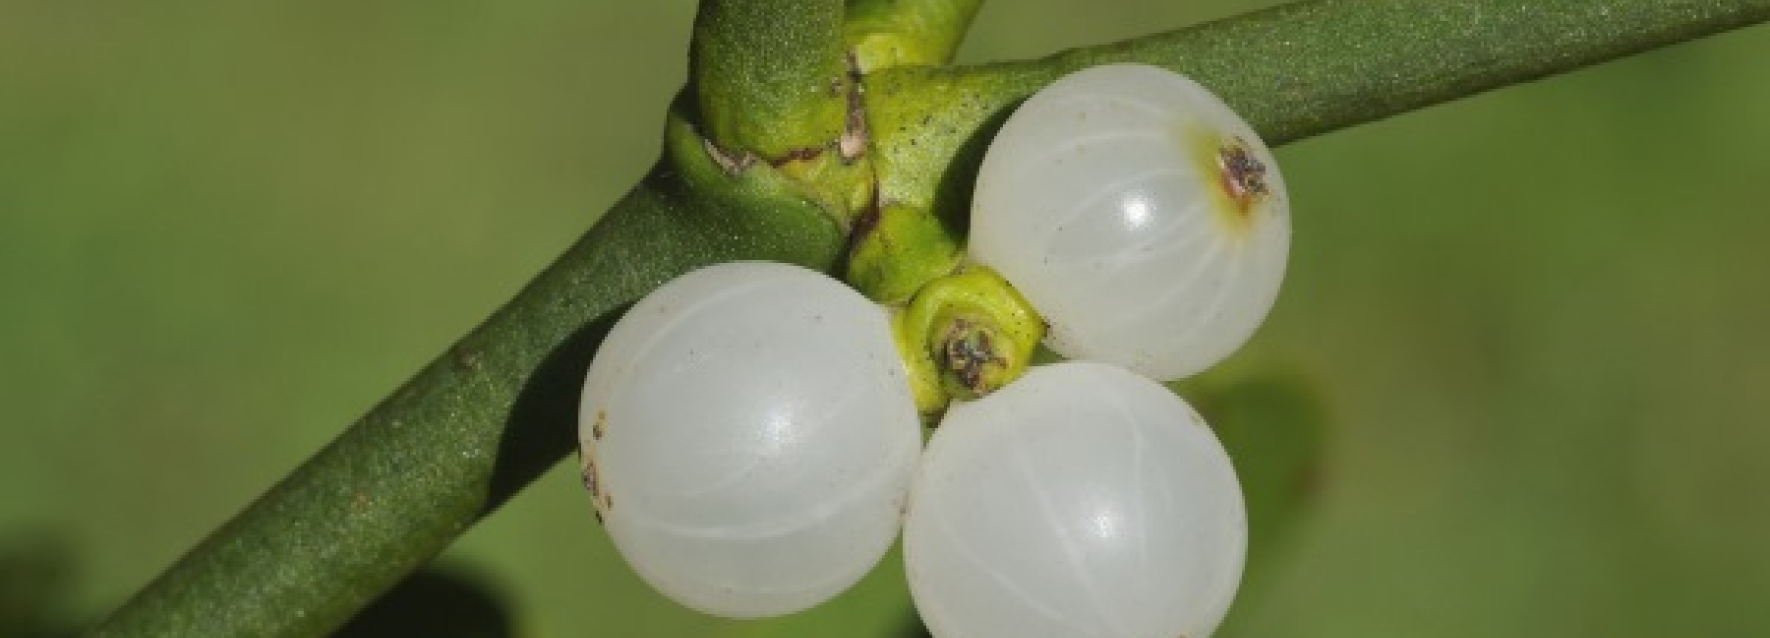 Um close de três frutas brancas penduradas em uma planta.